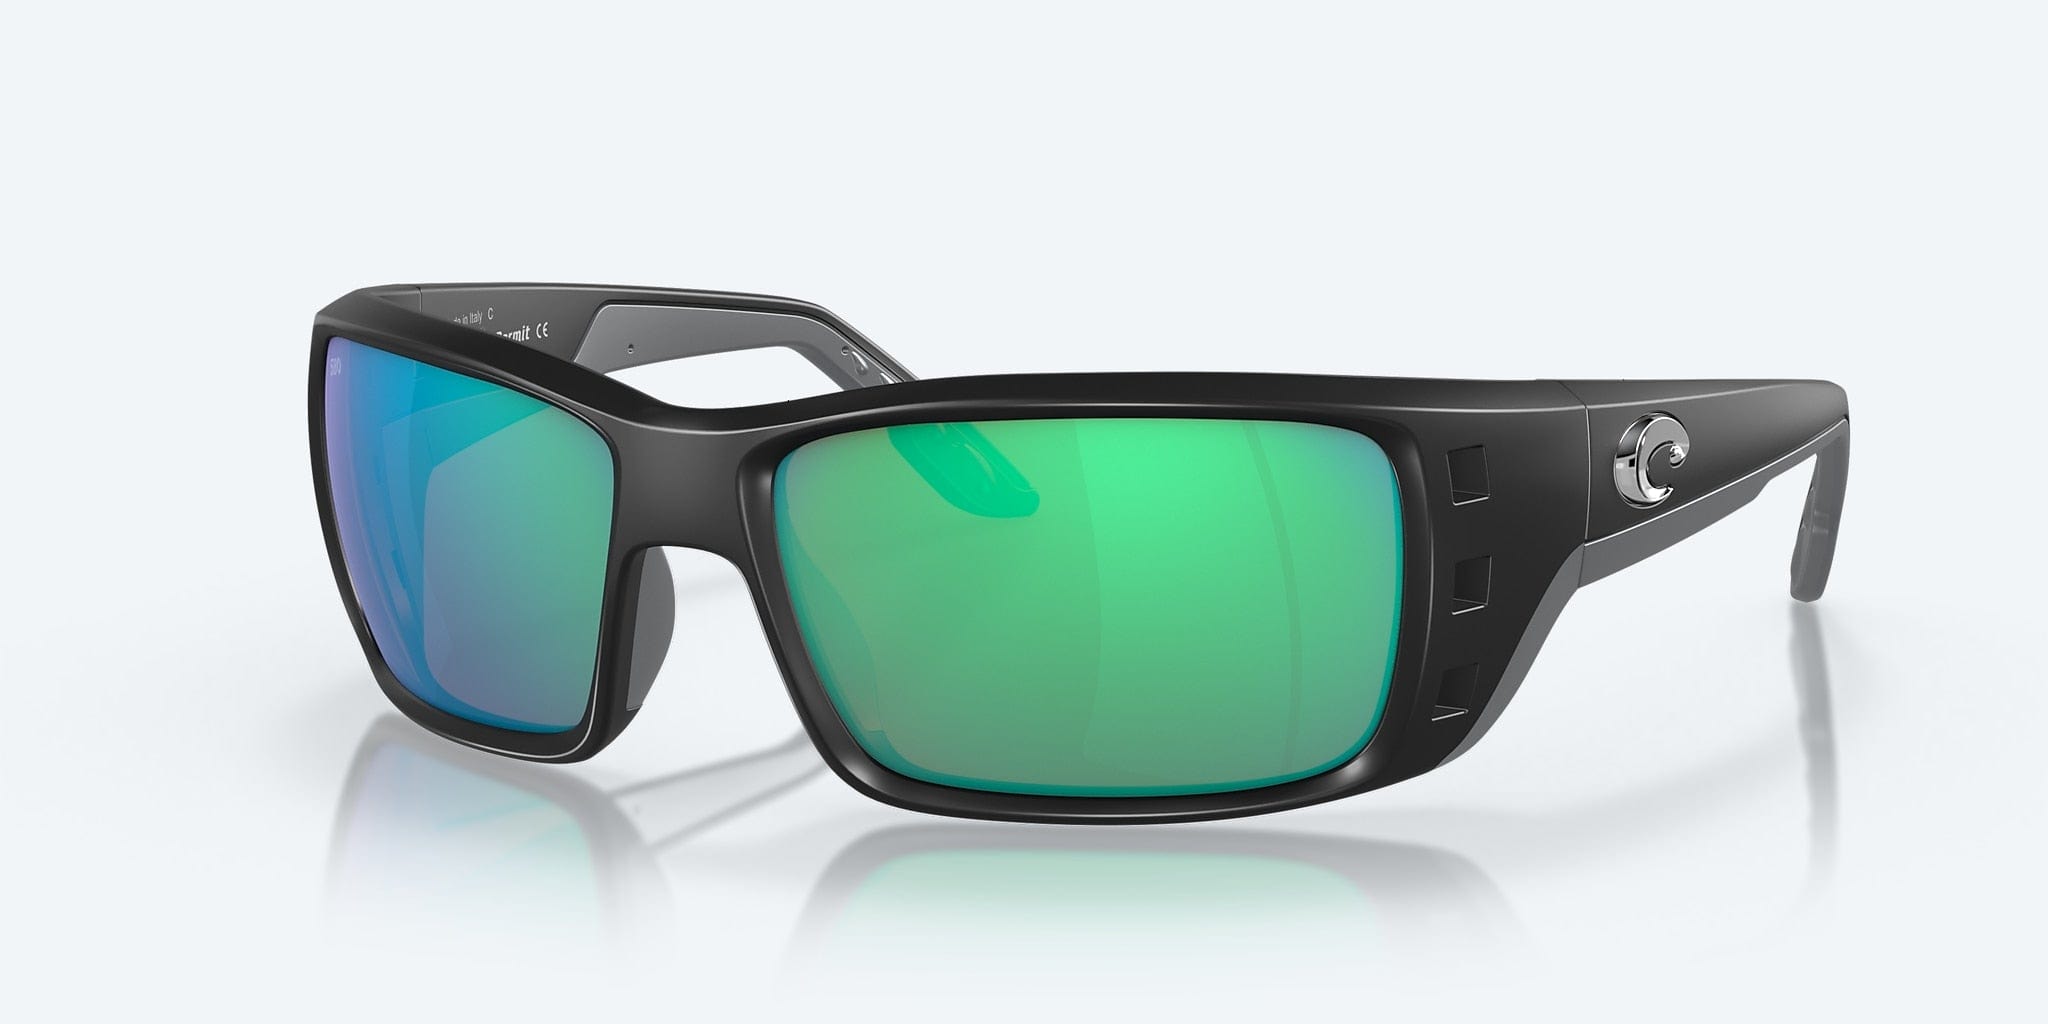 Costa Del Mar Permit Sunglasses - Matte Black / Green Mirror 580G